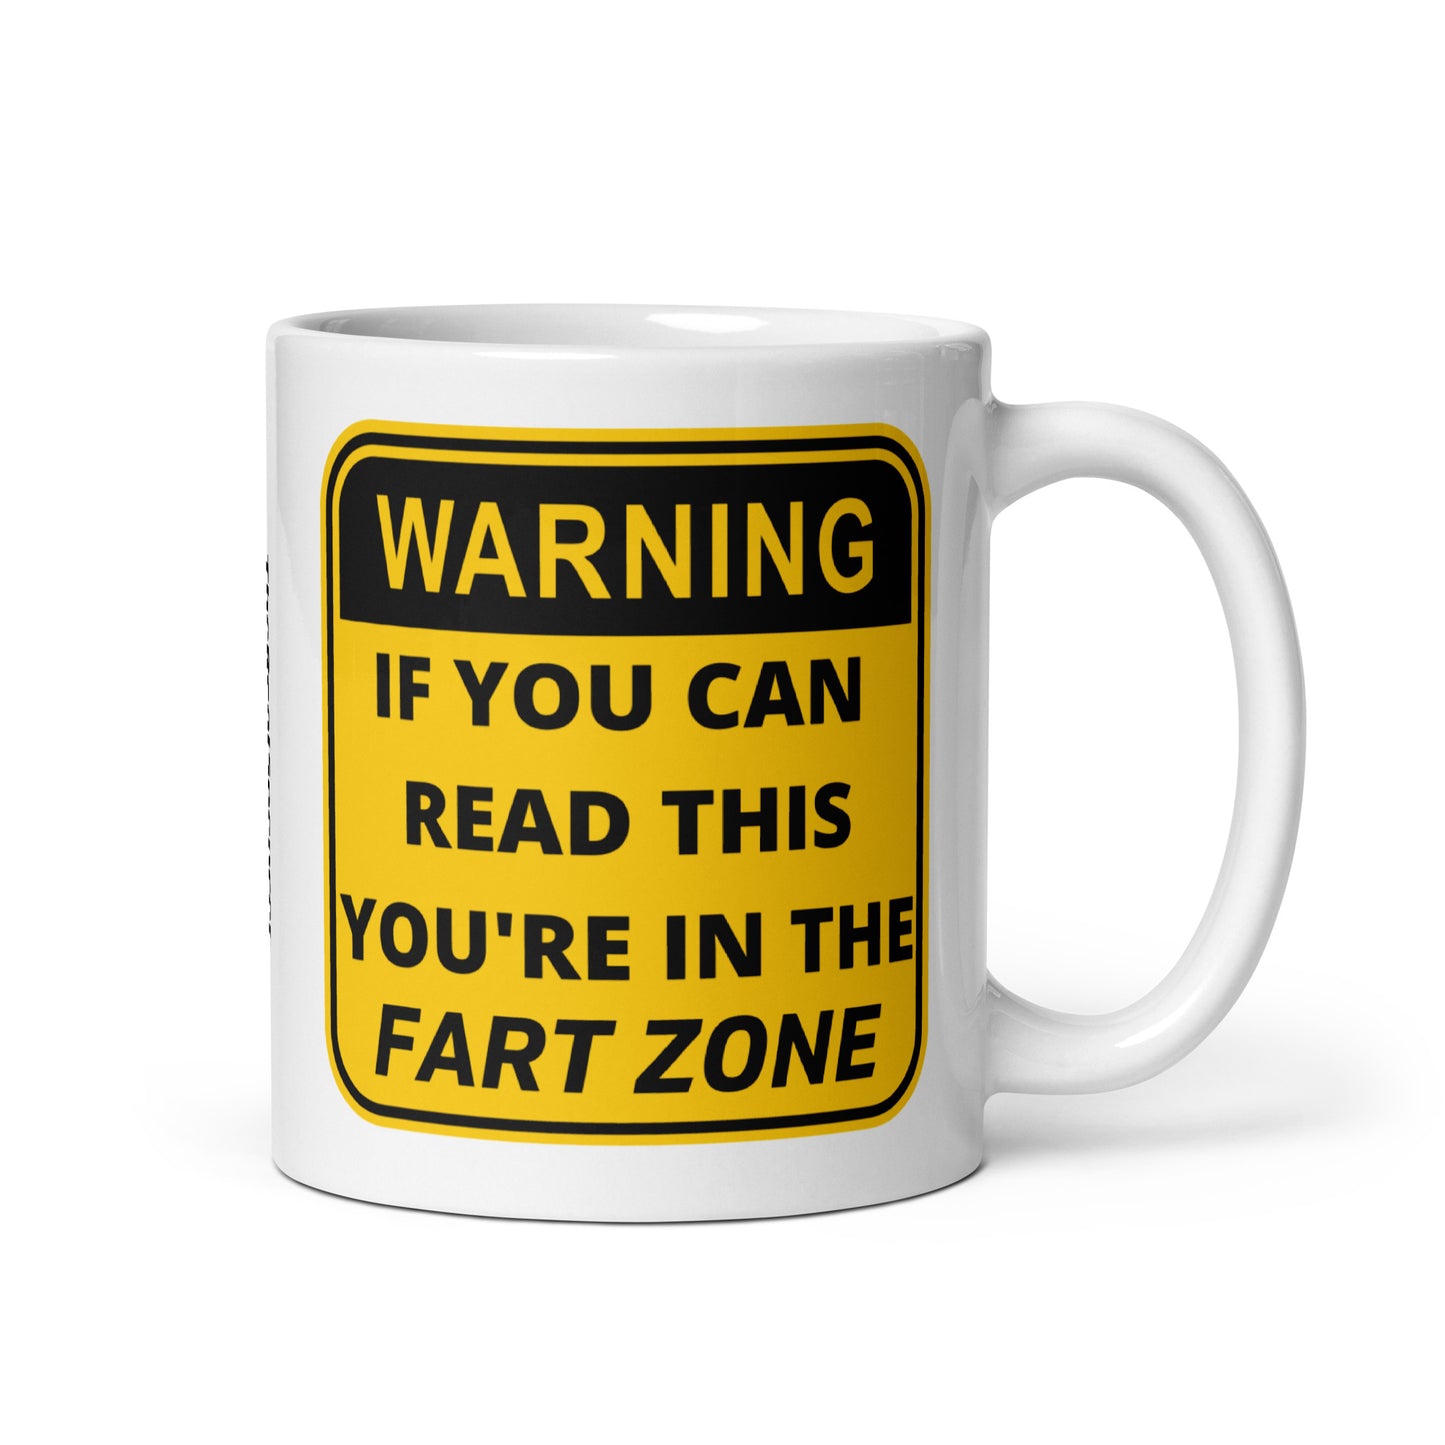 Fart Zone Mug